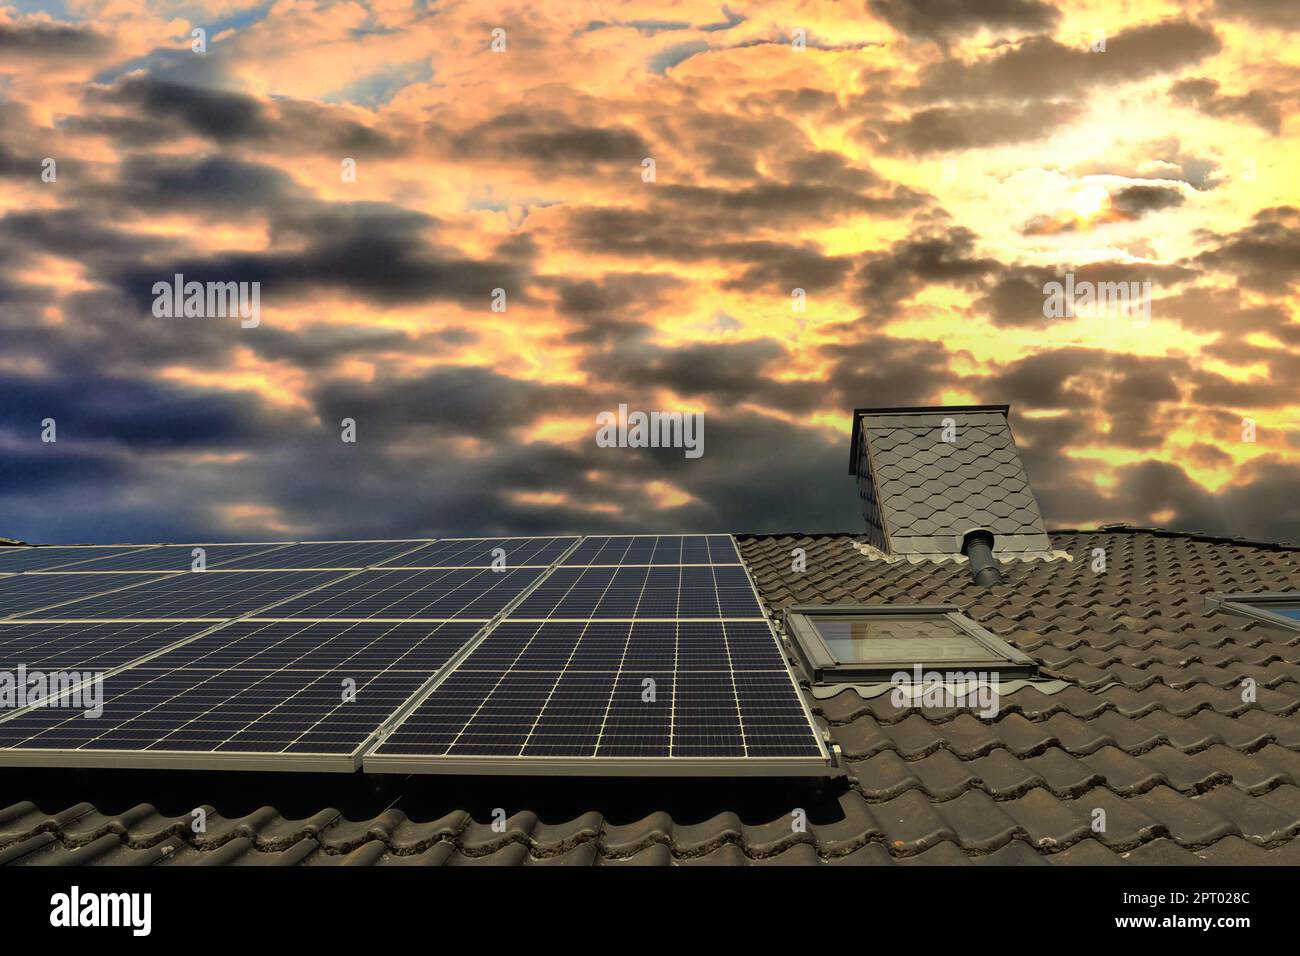 Panneaux solaires produisant de l'énergie propre sur le toit d'une maison résidentielle au coucher du soleil Banque D'Images